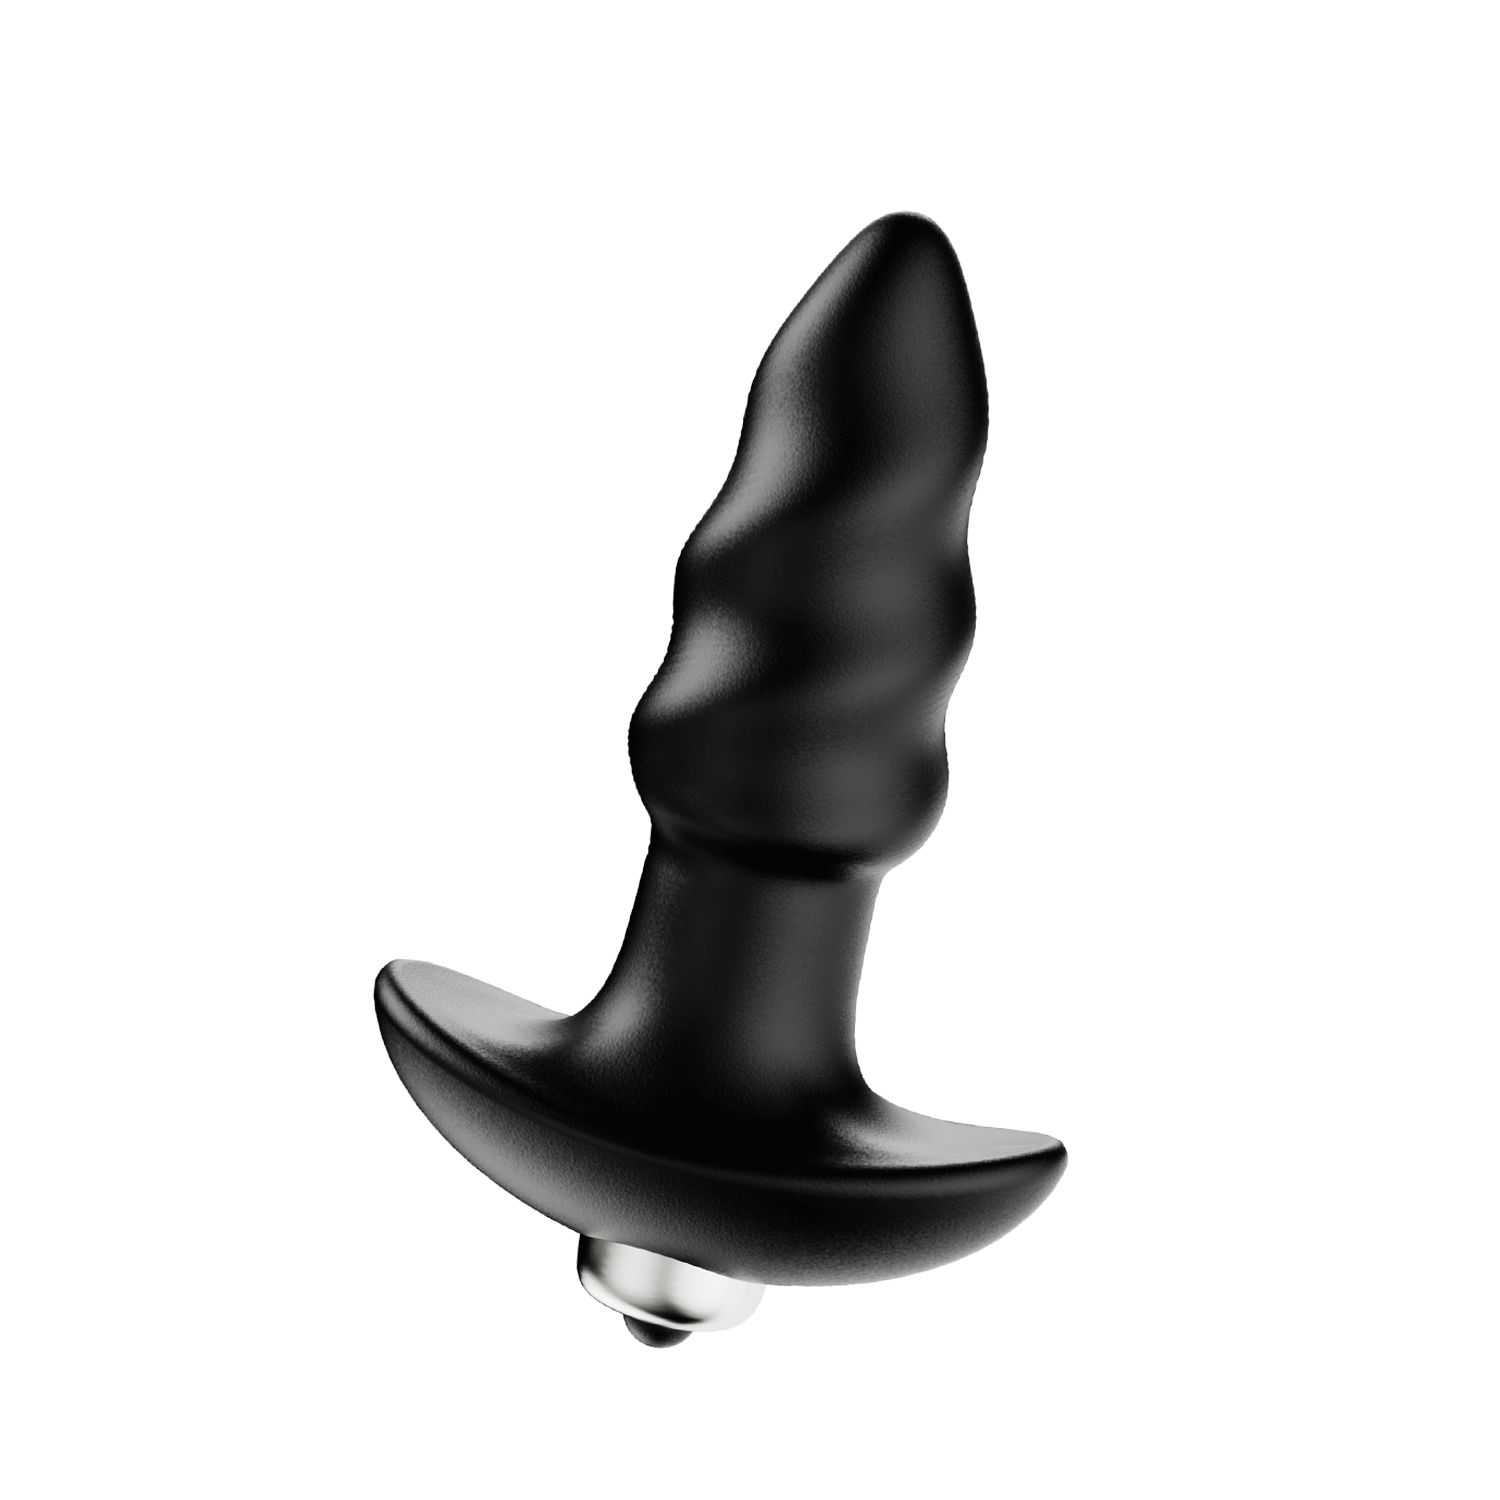 Cavatappi - Plug anale vibrante per giocattoli sessuali anali